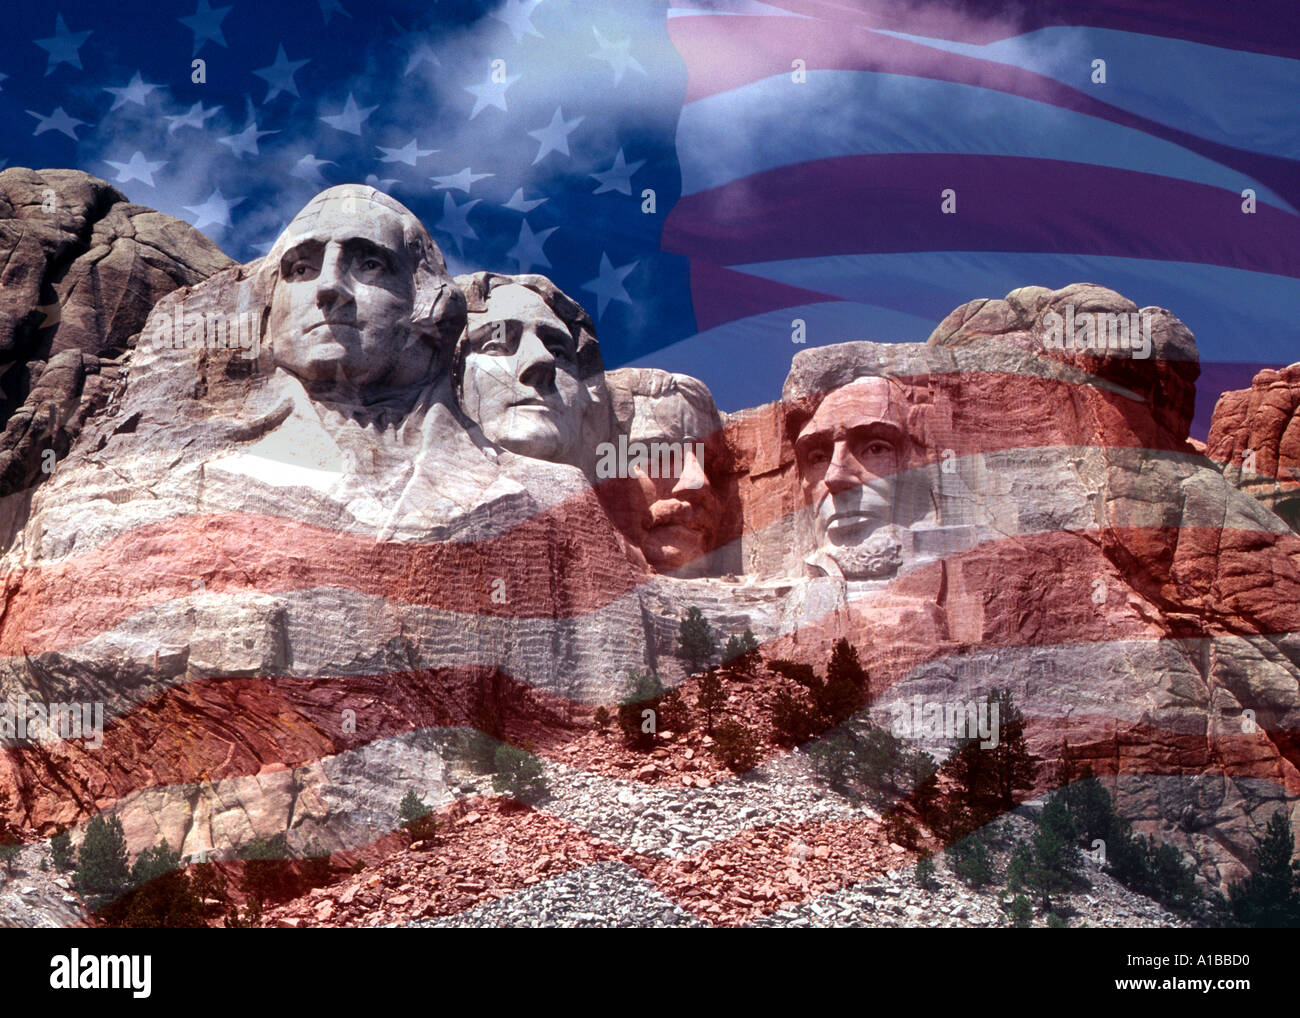 Le mont Rushmore dans le Dakota du sud-américain Stars and Stripes flag Banque D'Images